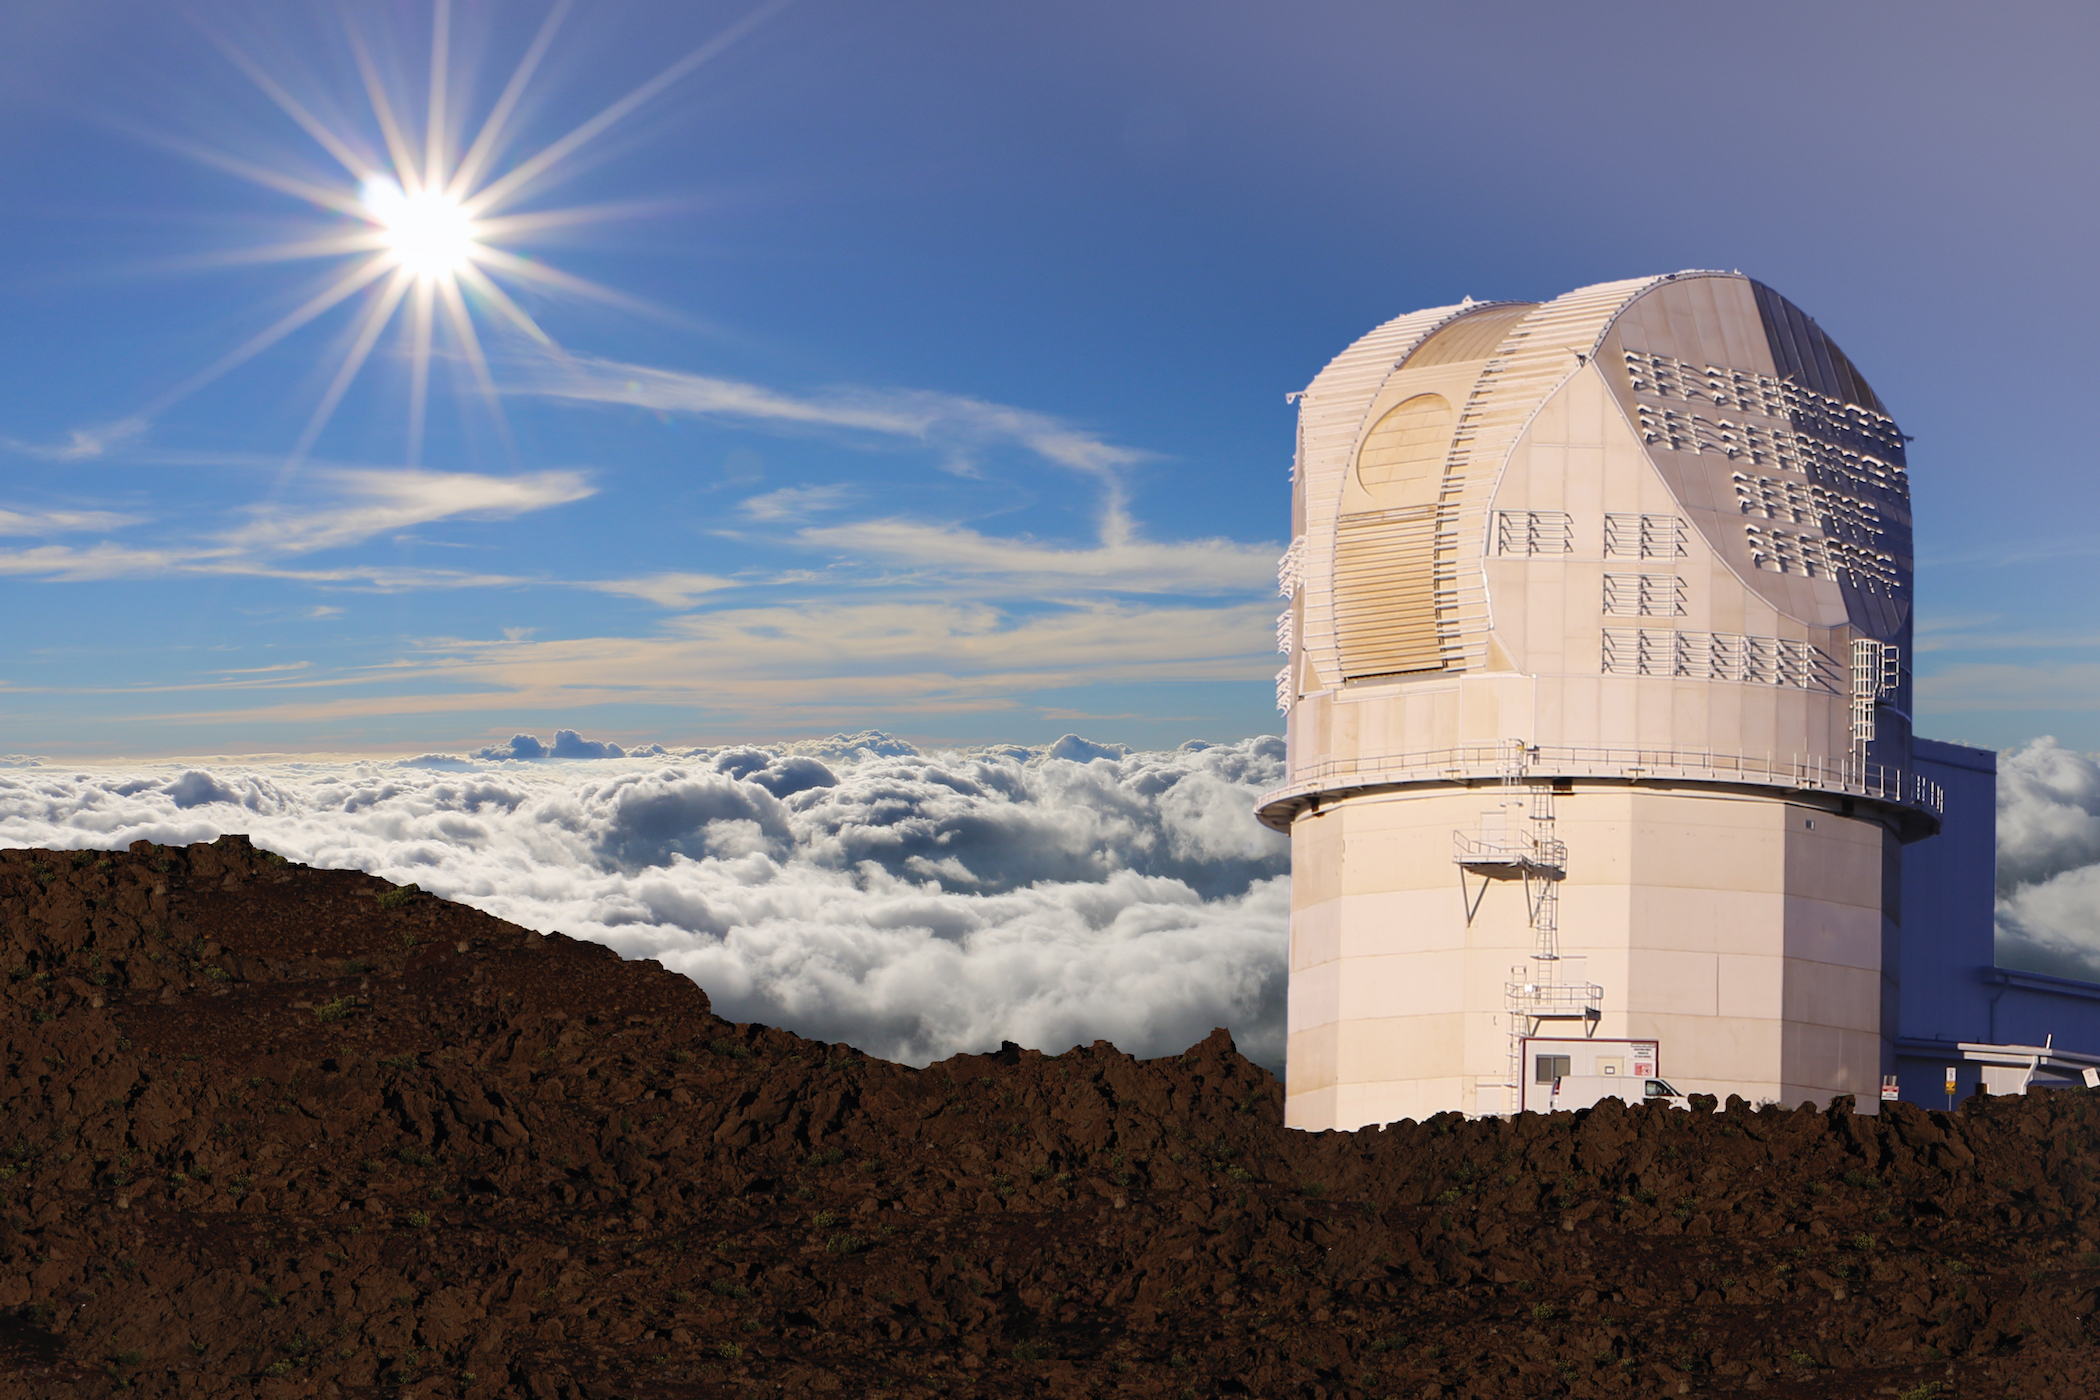 Nowy teleskop słoneczny DKIST (Daniel K. Inouye Solar Telescope) w pobliżu szczytu Haleakalā na Hawajach. Oczekuje się, że w 2021 roku teleskop rozpocznie normalną działalność i będzie dostarczał rocznie 3 PB surowych danych (BP, czyli petabajt; 1 PB = 1000 TB = 1015 bajtów). Źródło: NSO/AURA/NSF